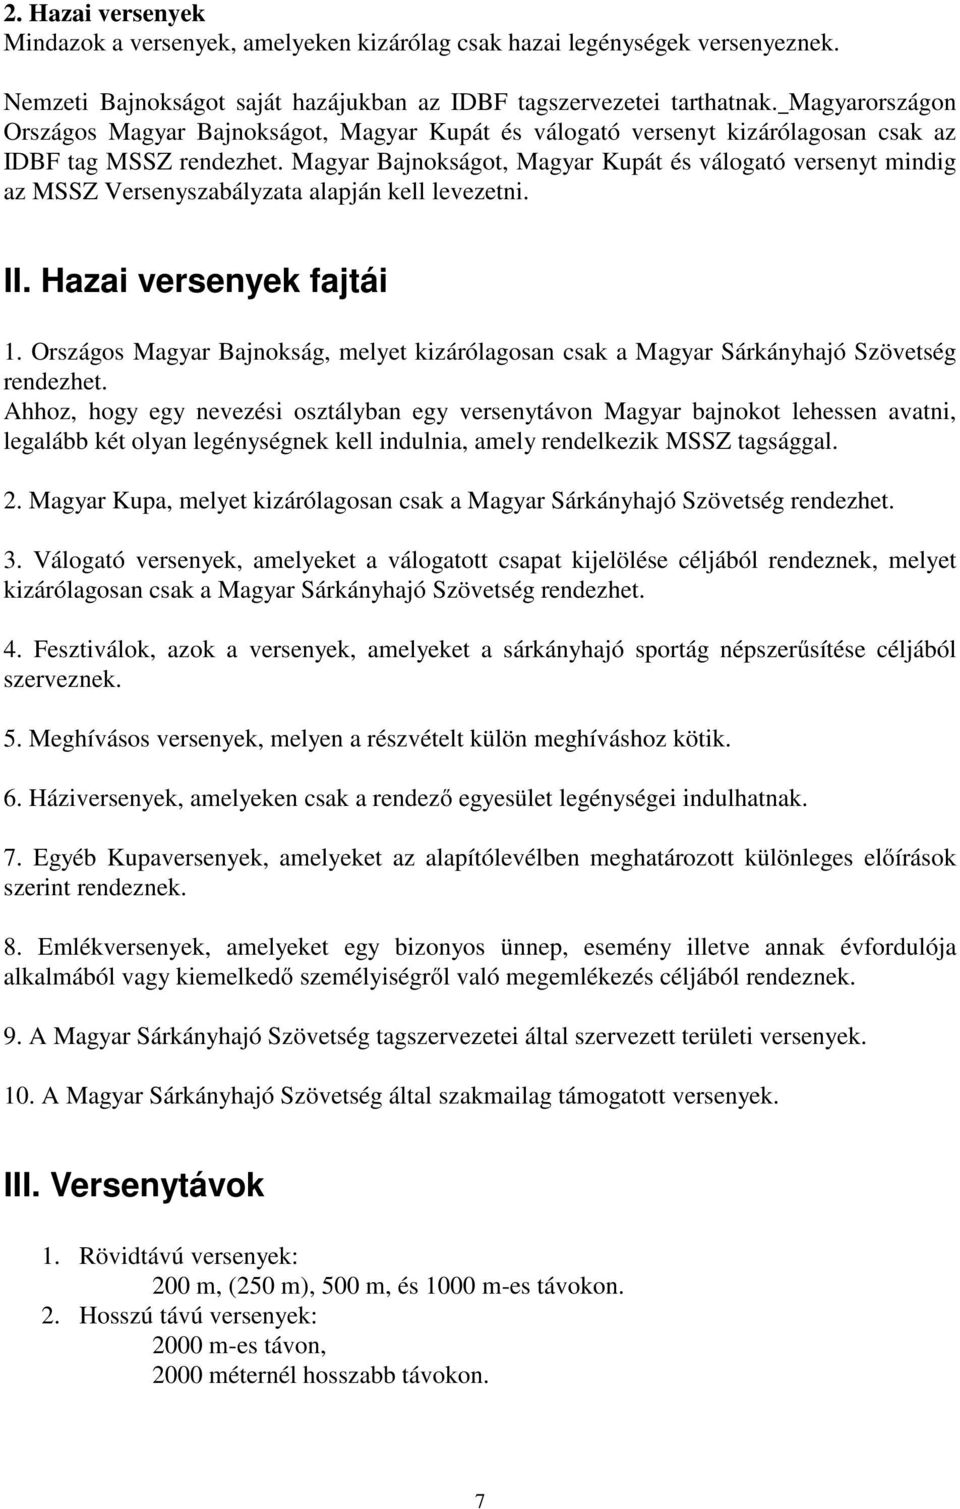 Magyar Bajnokságot, Magyar Kupát és válogató versenyt mindig az MSSZ Versenyszabályzata alapján kell levezetni. II. Hazai versenyek fajtái 1.